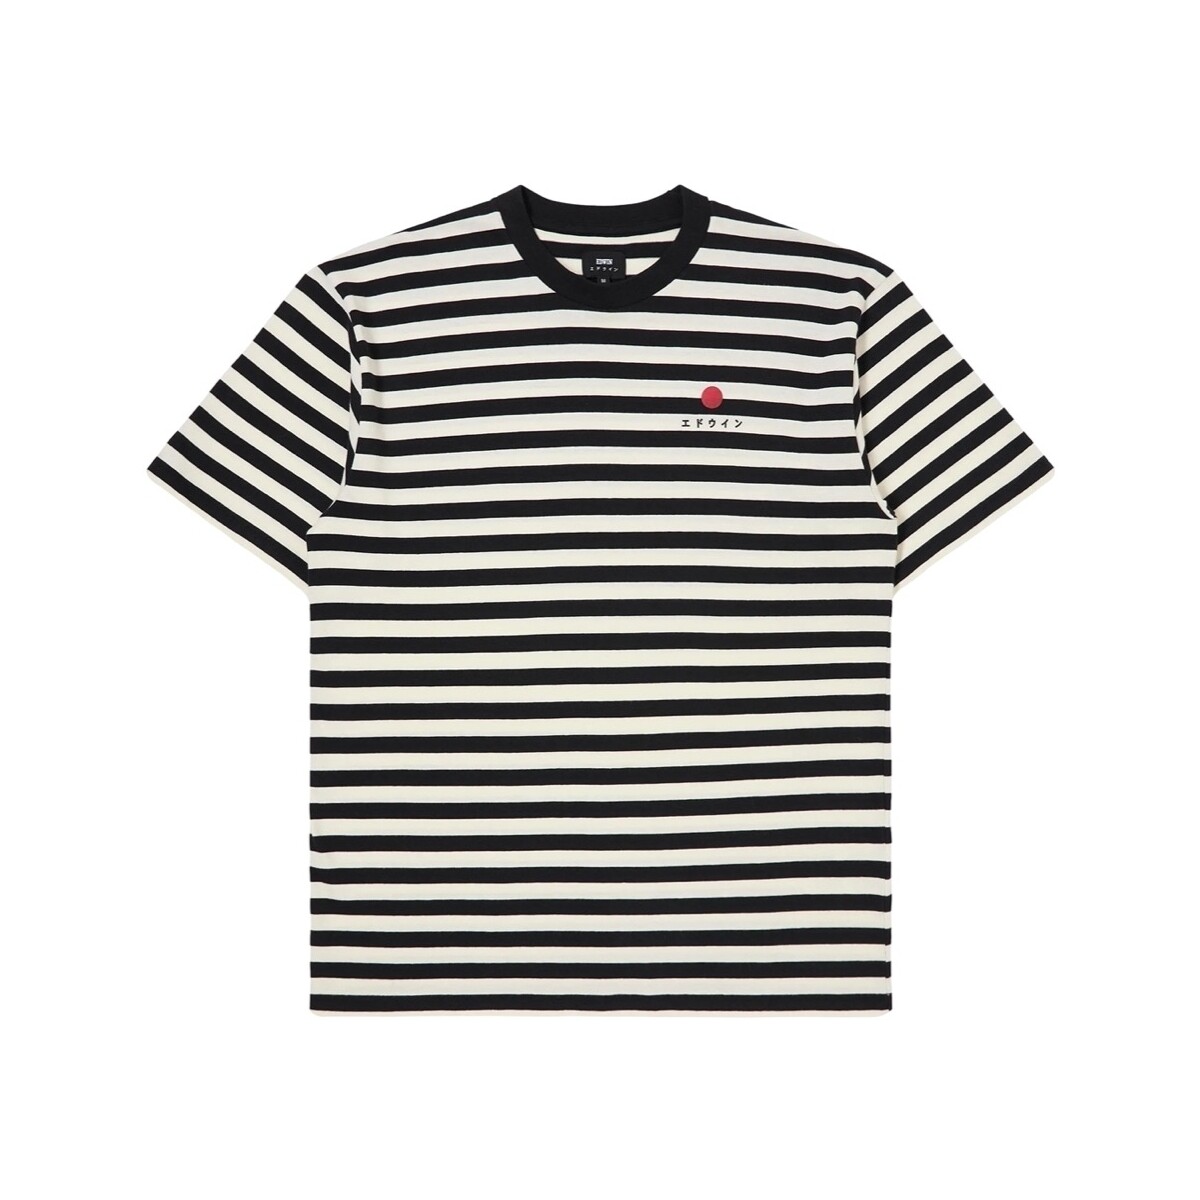 Ruhák Férfi Pólók / Galléros Pólók Edwin Basic Stripe T-Shirt - Black/White Sokszínű